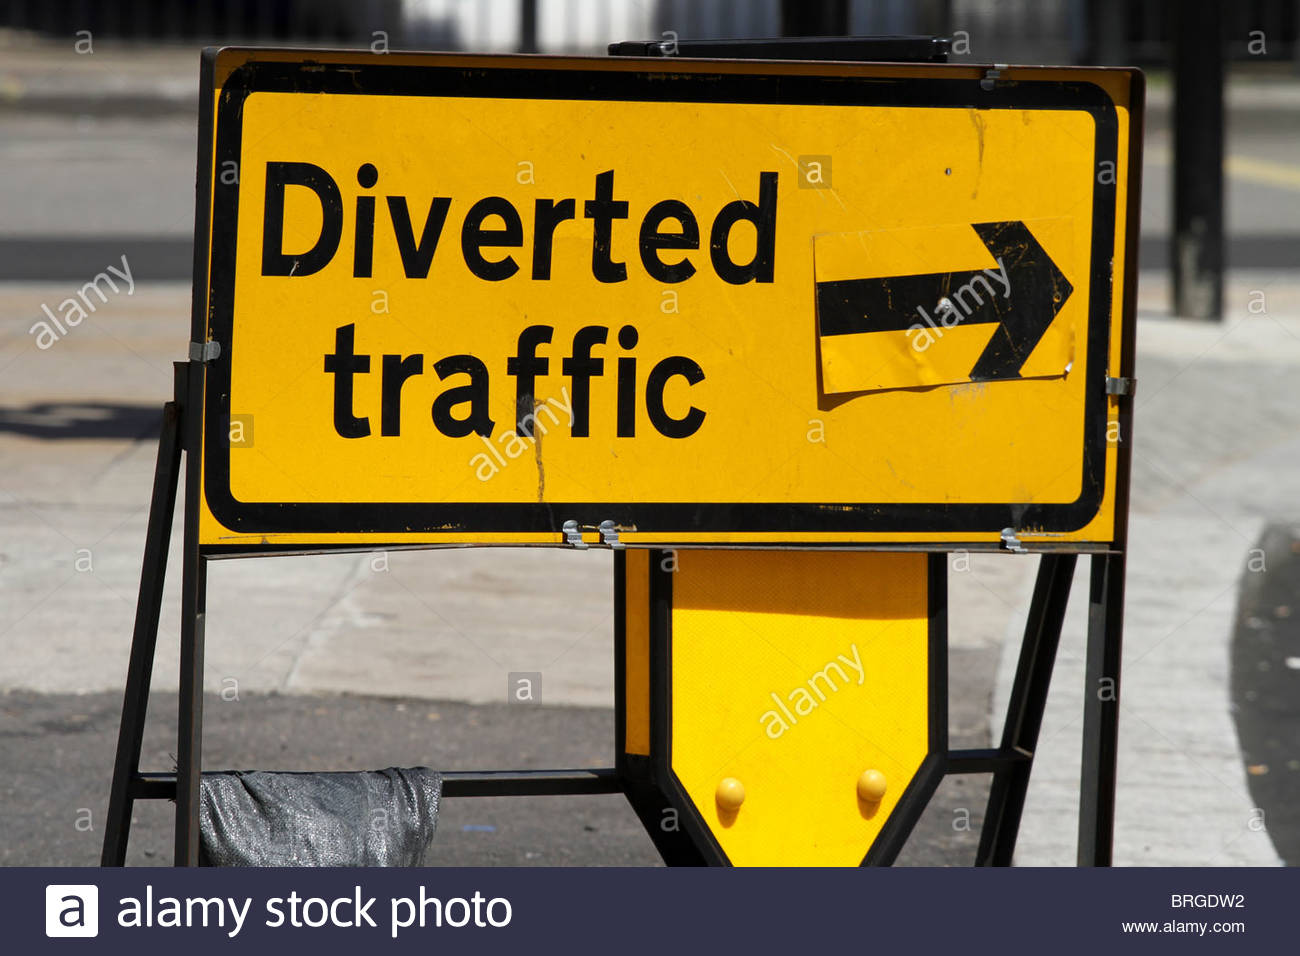 diverted-traffic-diversion-sign-london-england